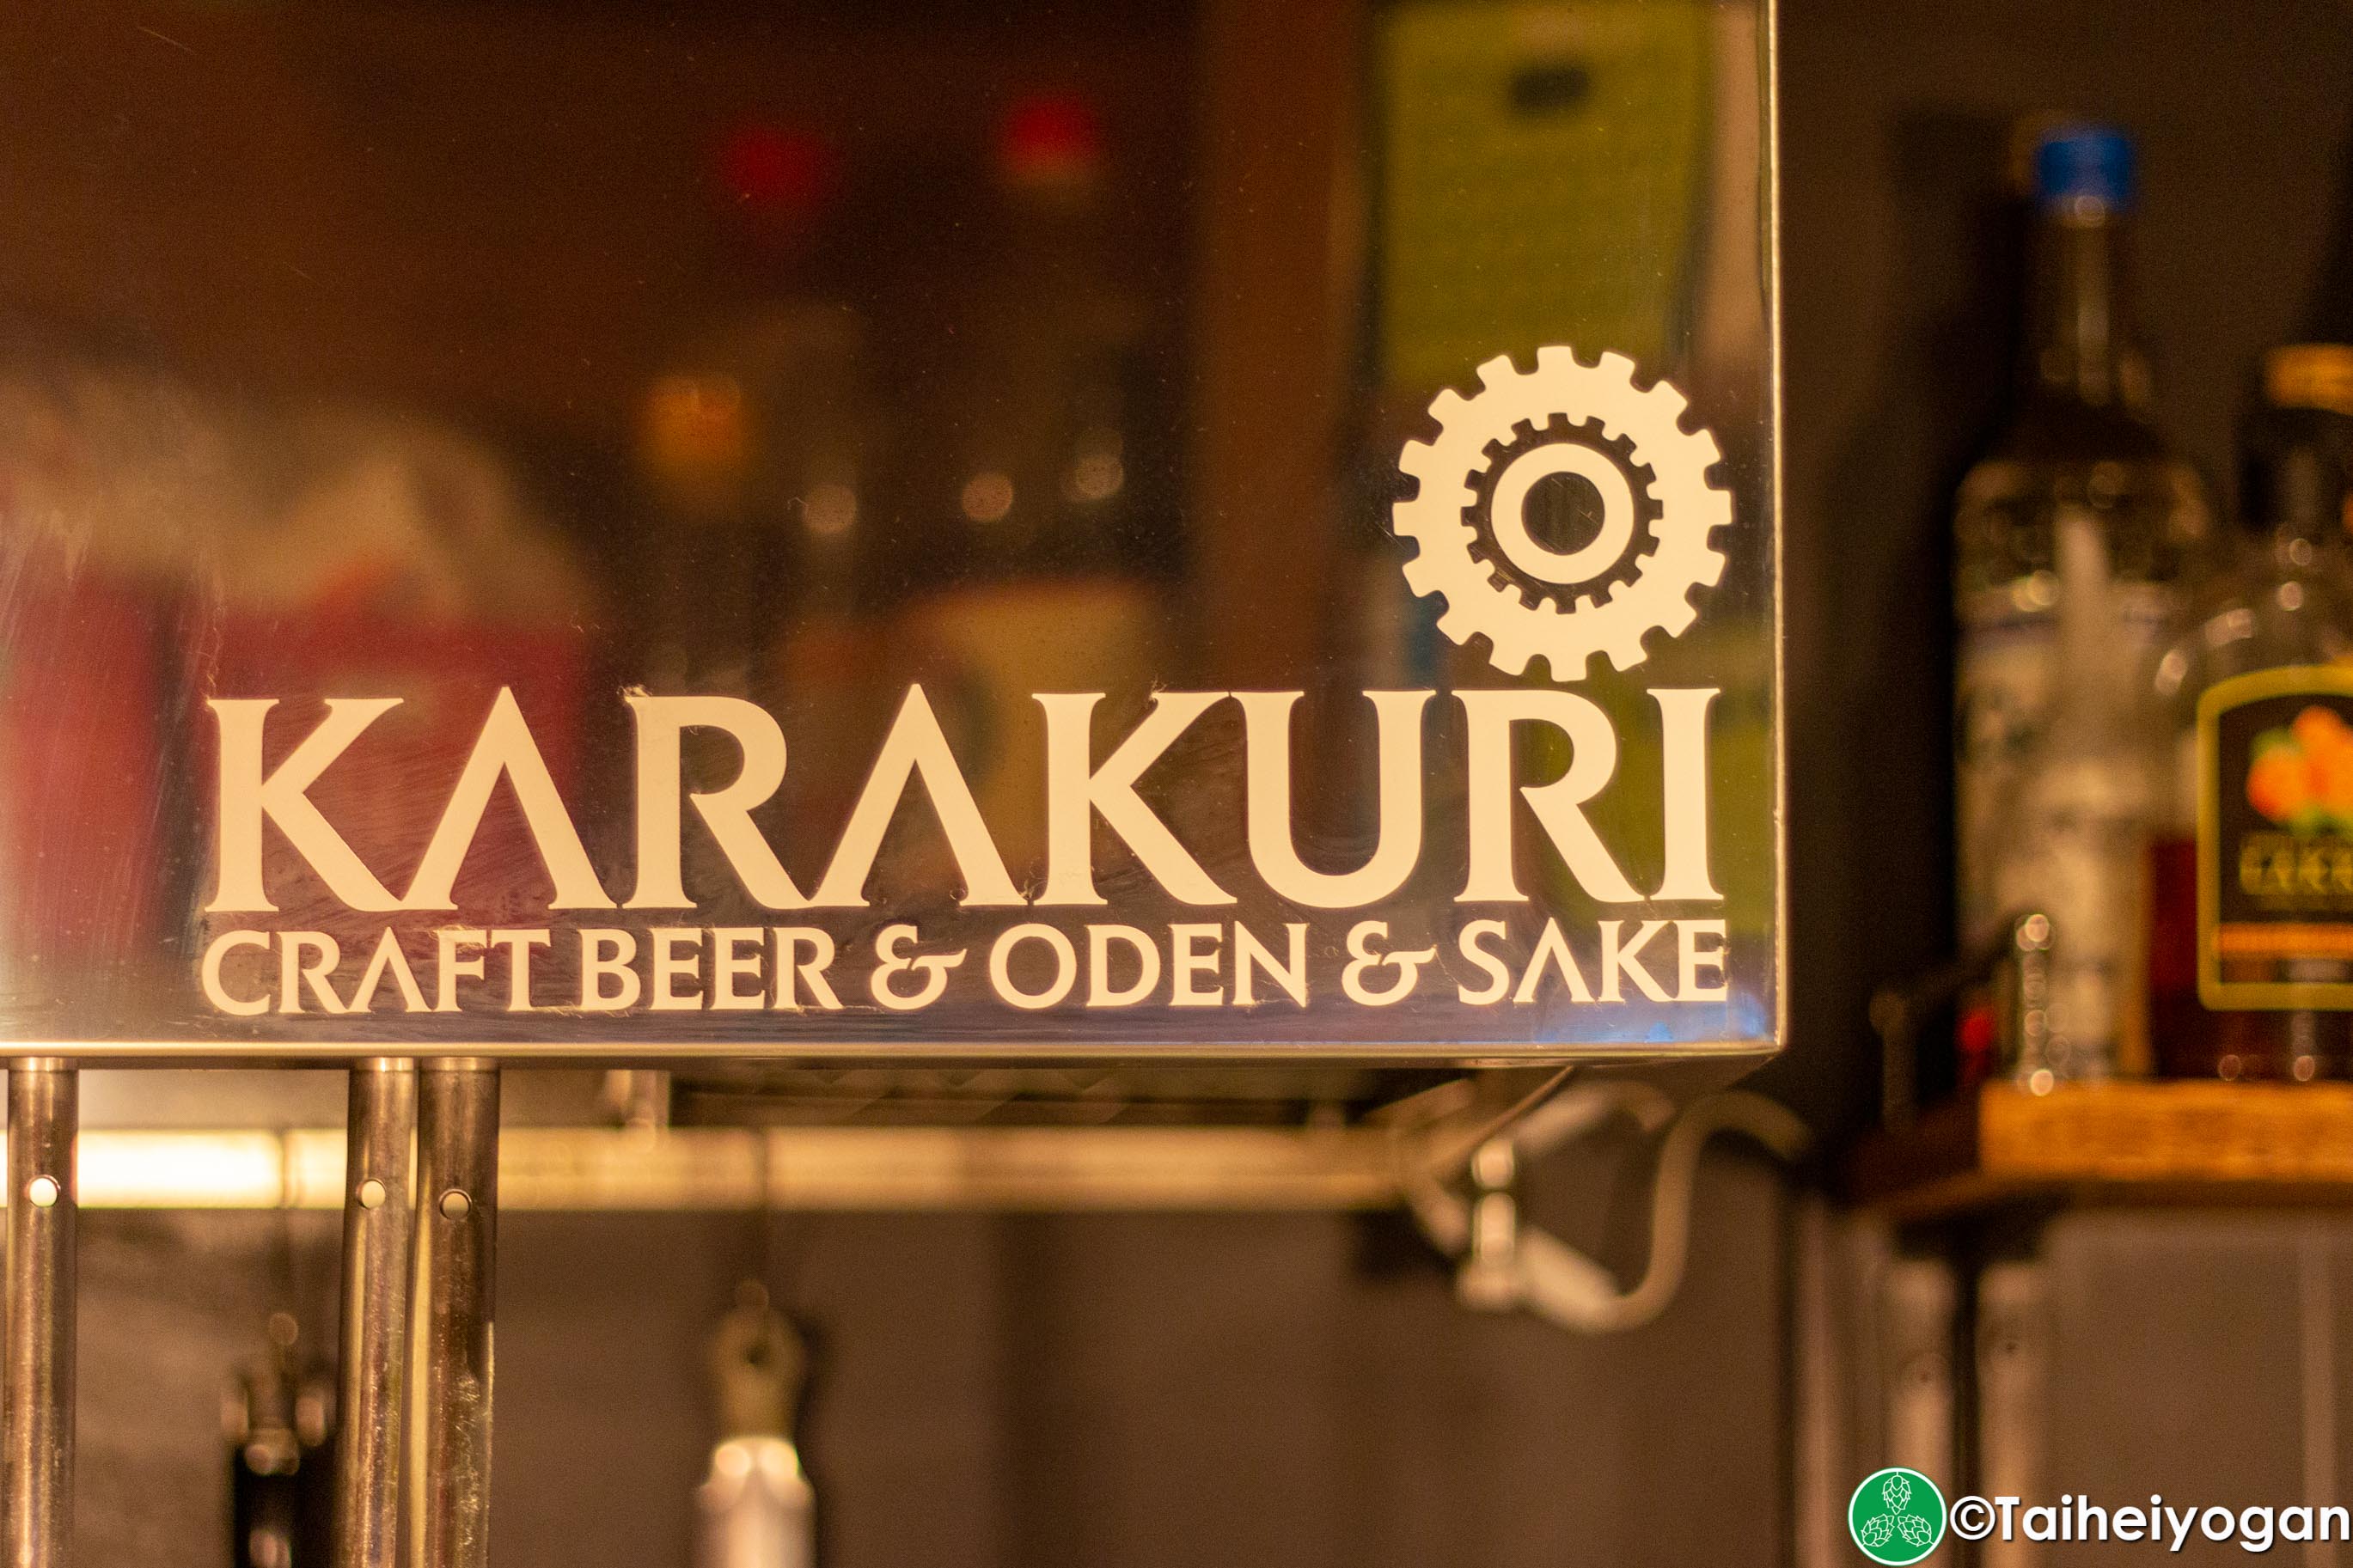 Karakuri Craft Beer & Oden & Sake - Interior - Logo